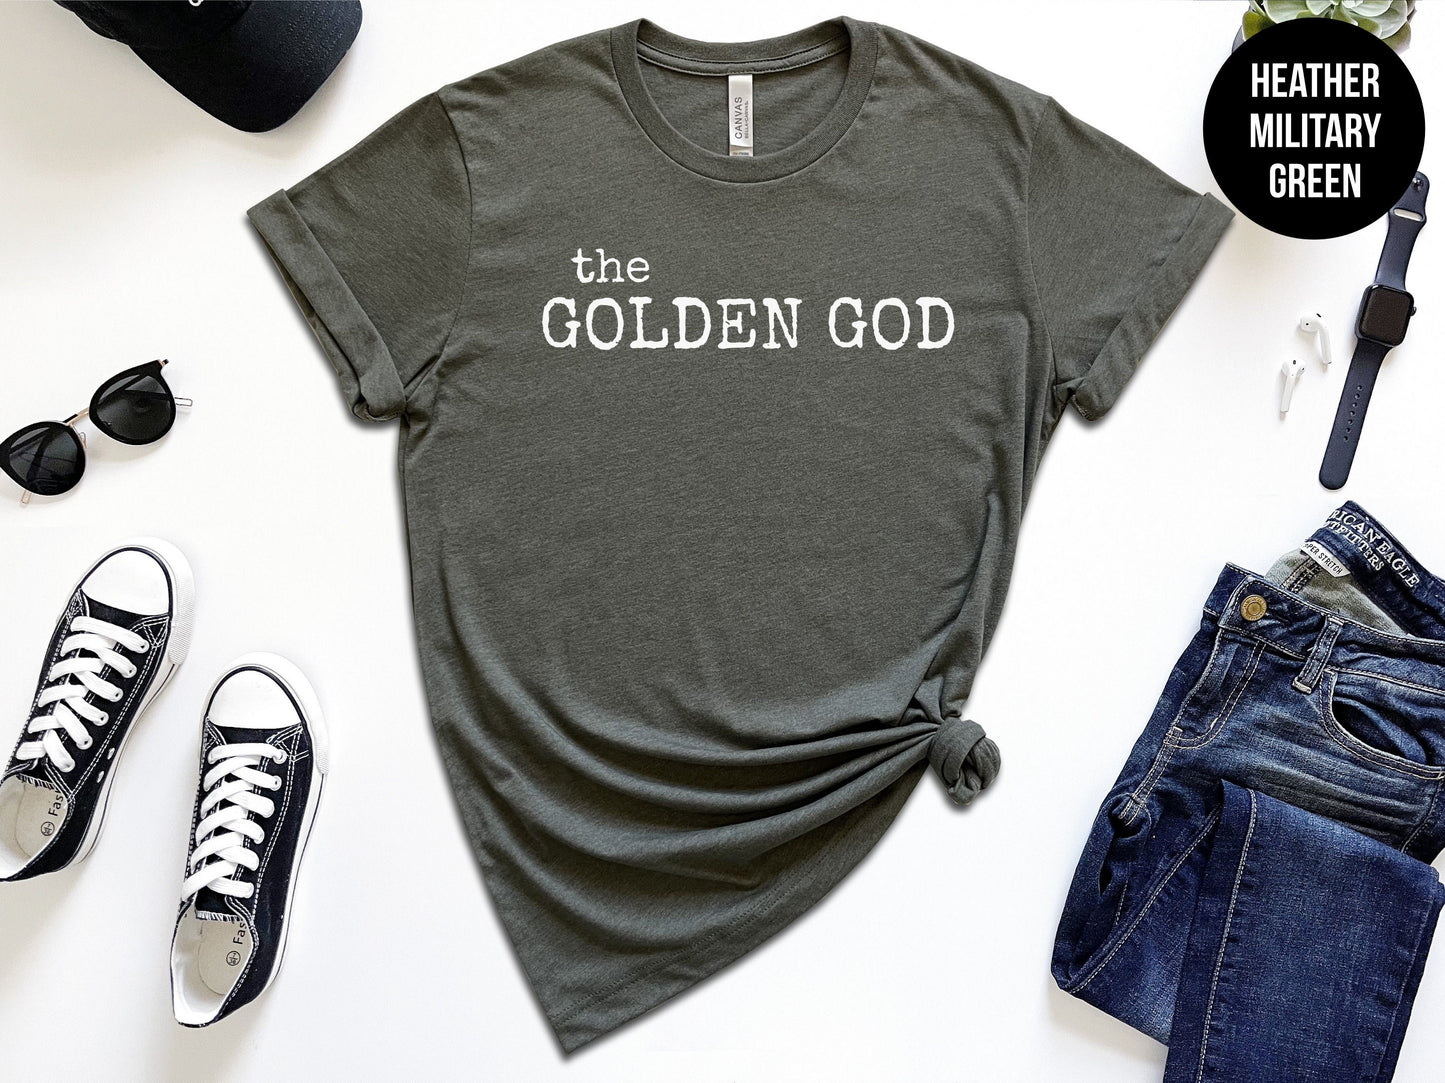 The Golden God